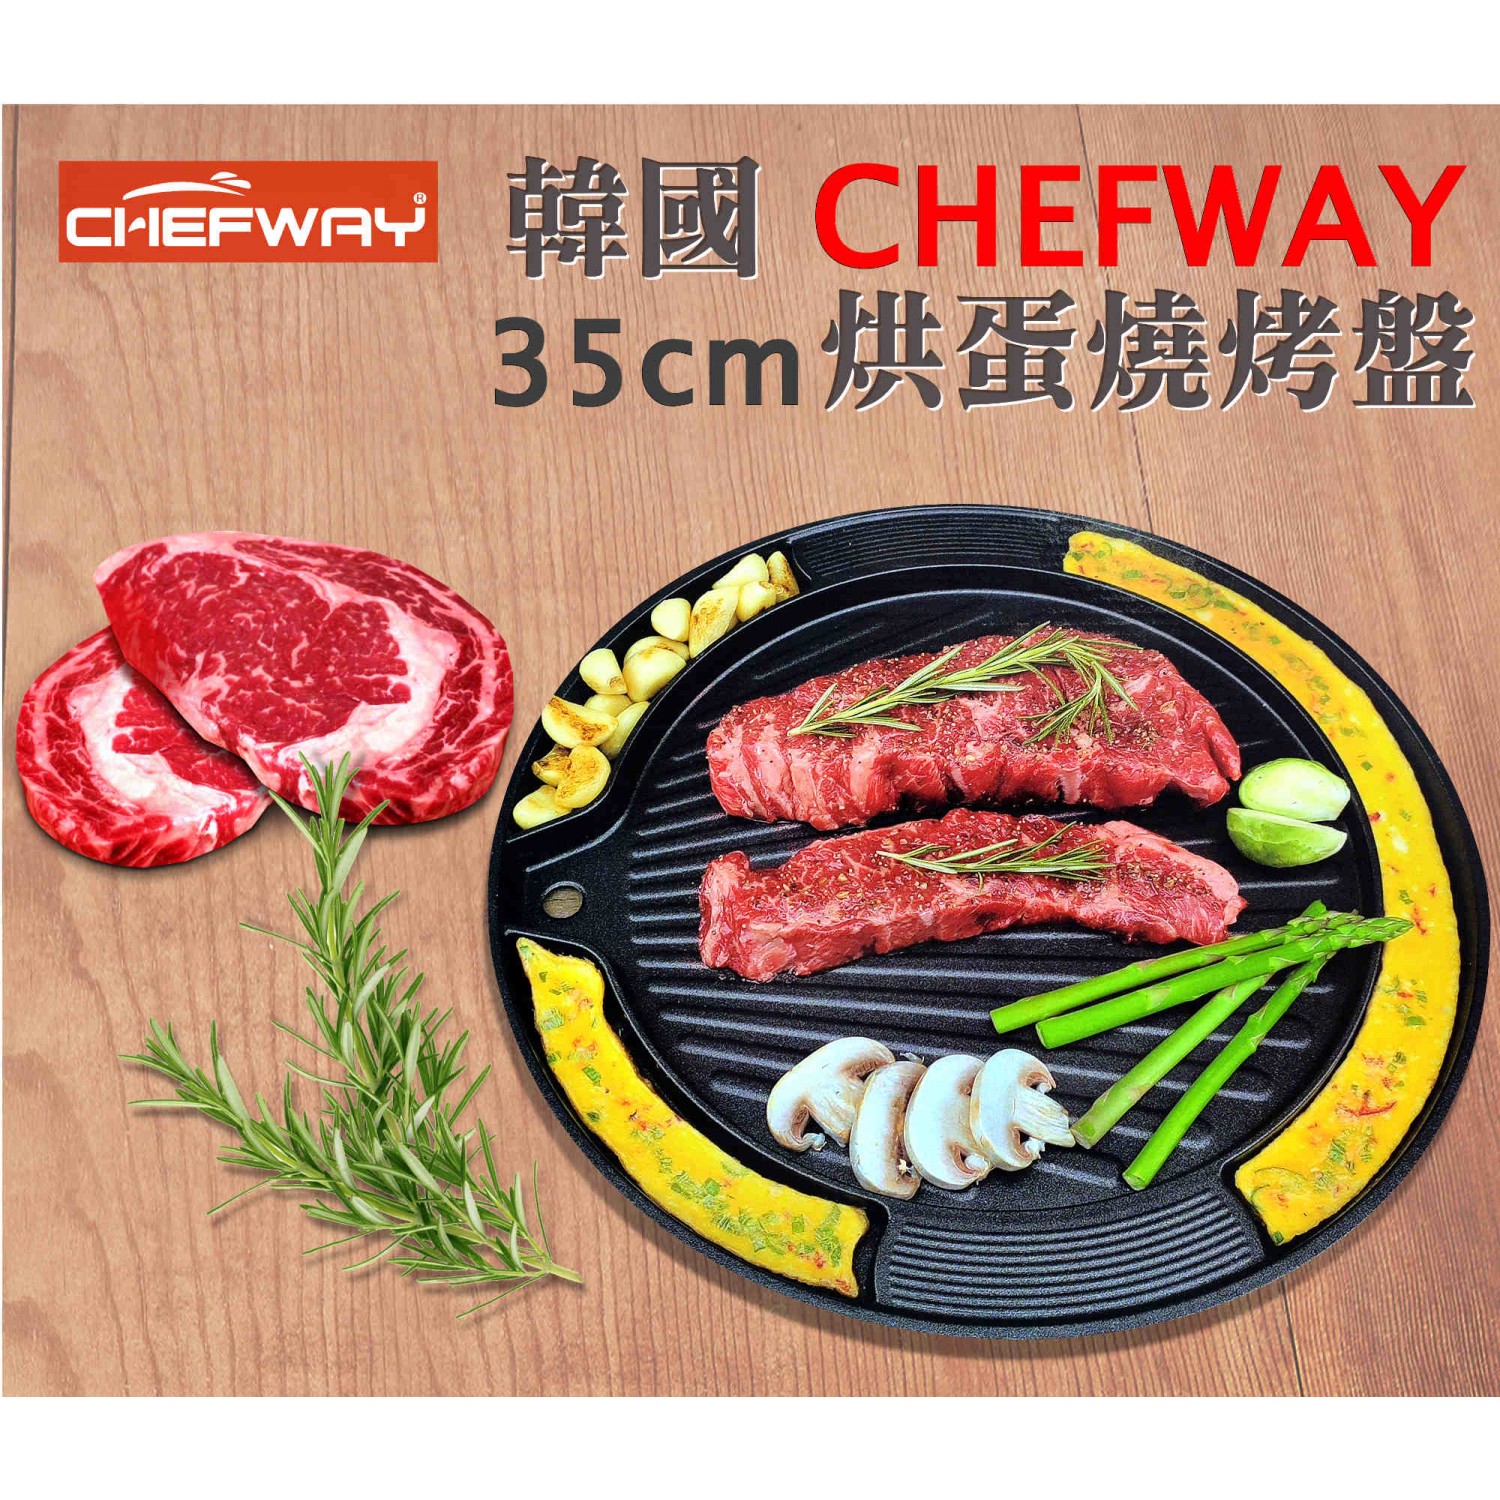 韓國 Chefway 烘蛋燒烤盤 35cm (此貨品不設免費送貨，可選擇到本店自取，或於荔枝角港鐵站交收)